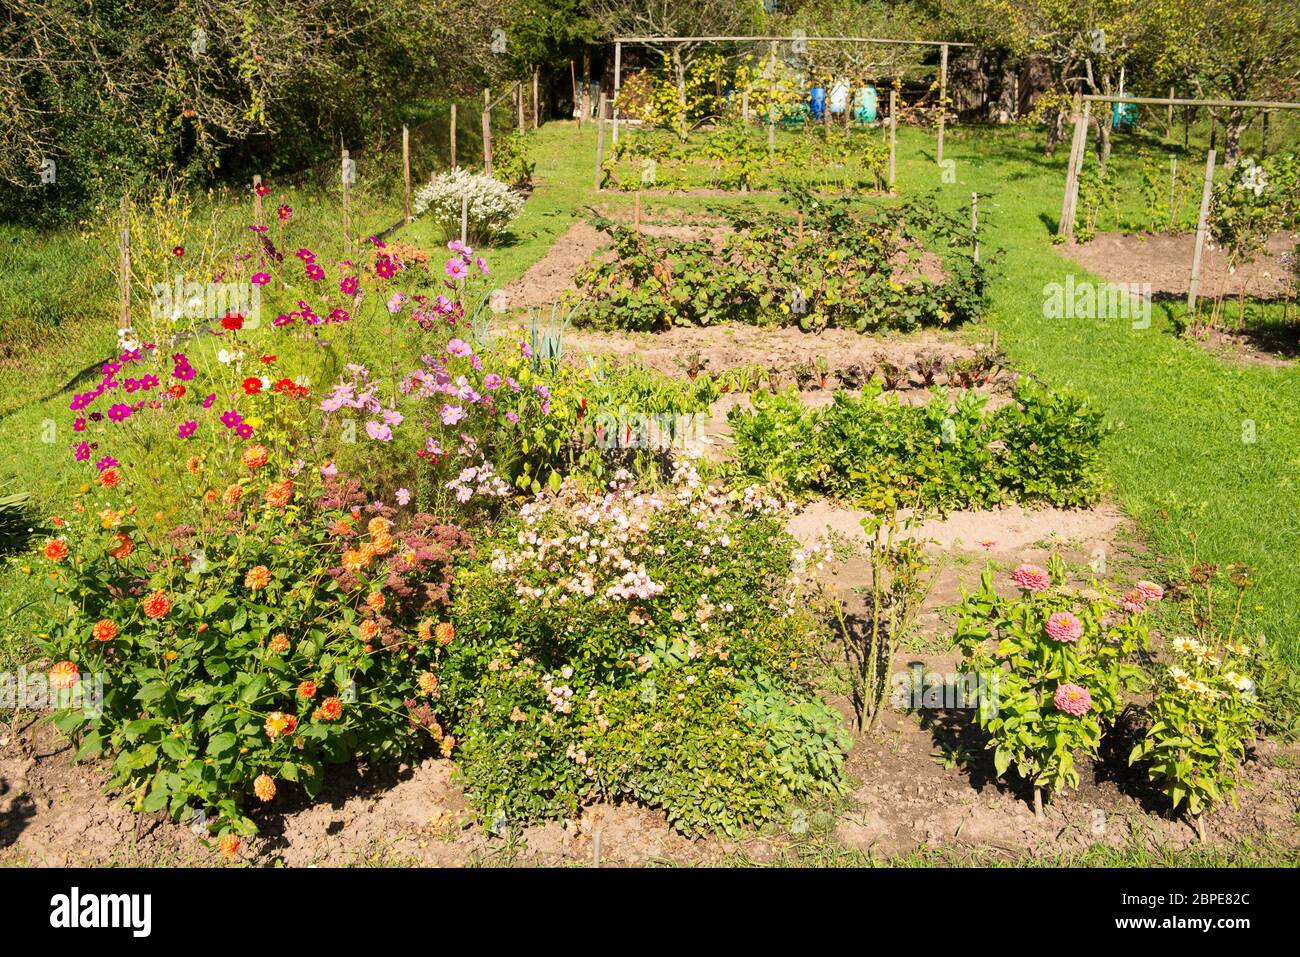 Garten mit blühenden Blumen, Gemüse und Obst Stock Photo